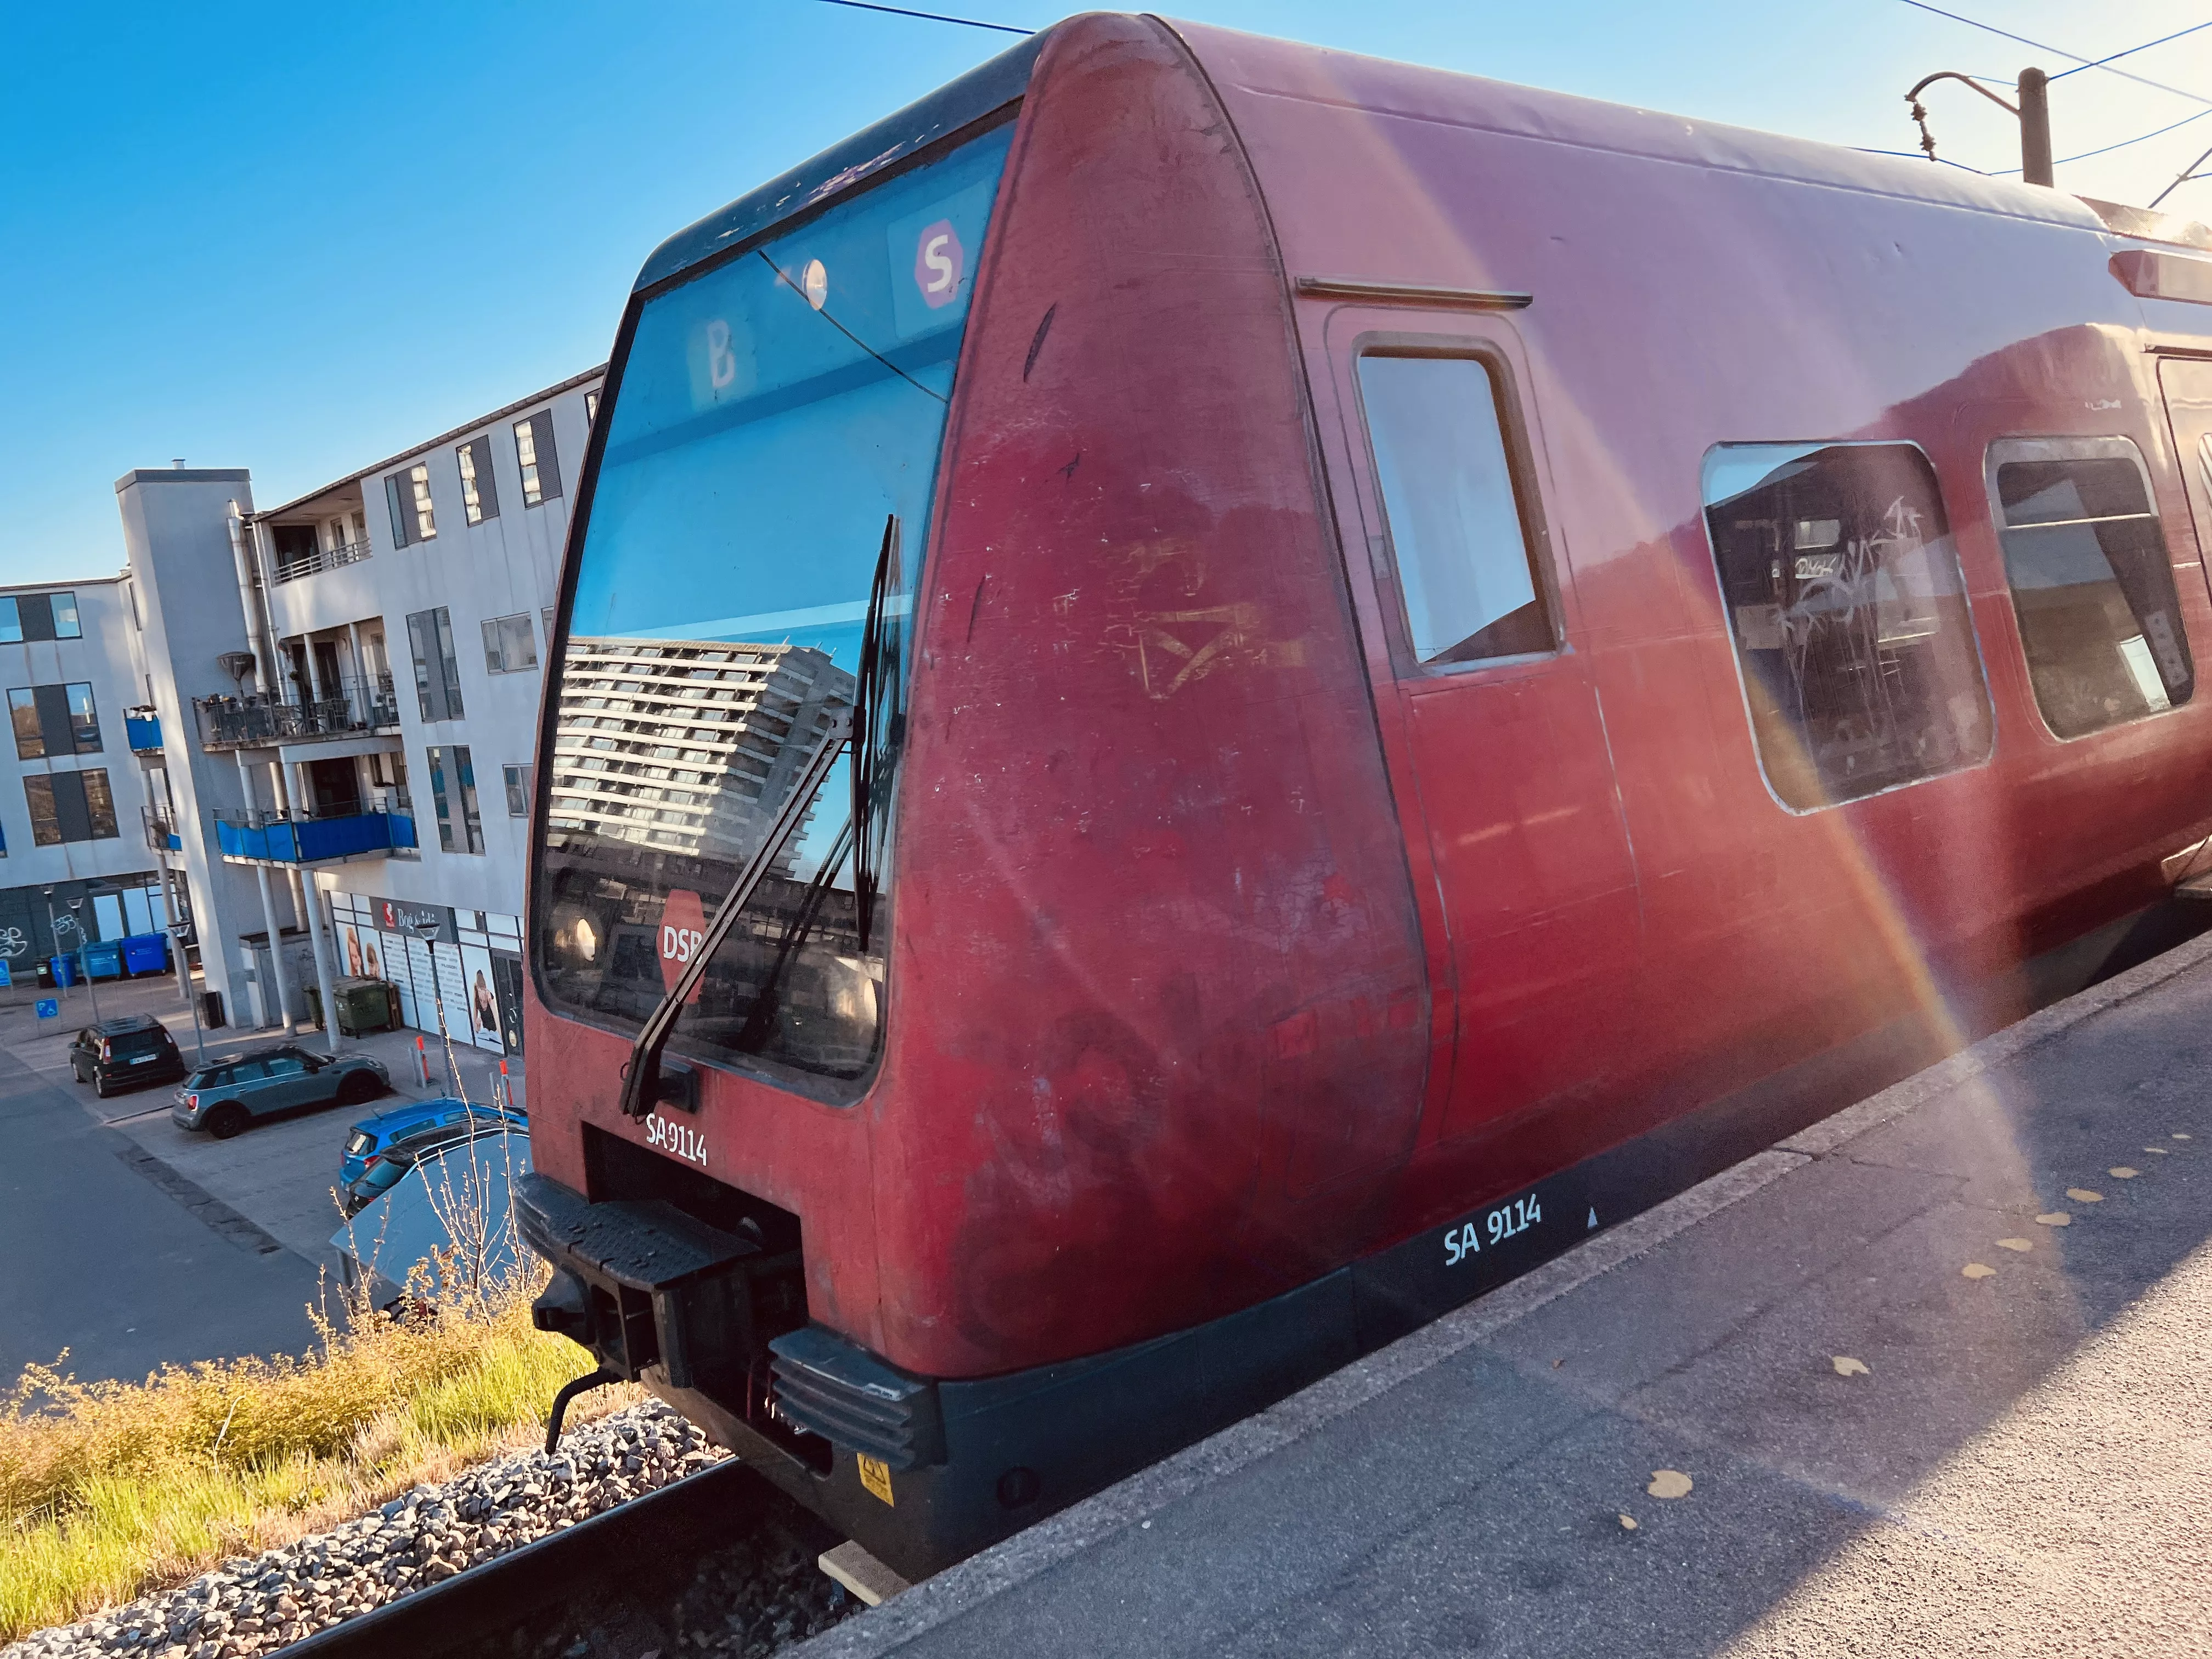 Billede af tog ud for Bagsværd S-togstrinbræt.